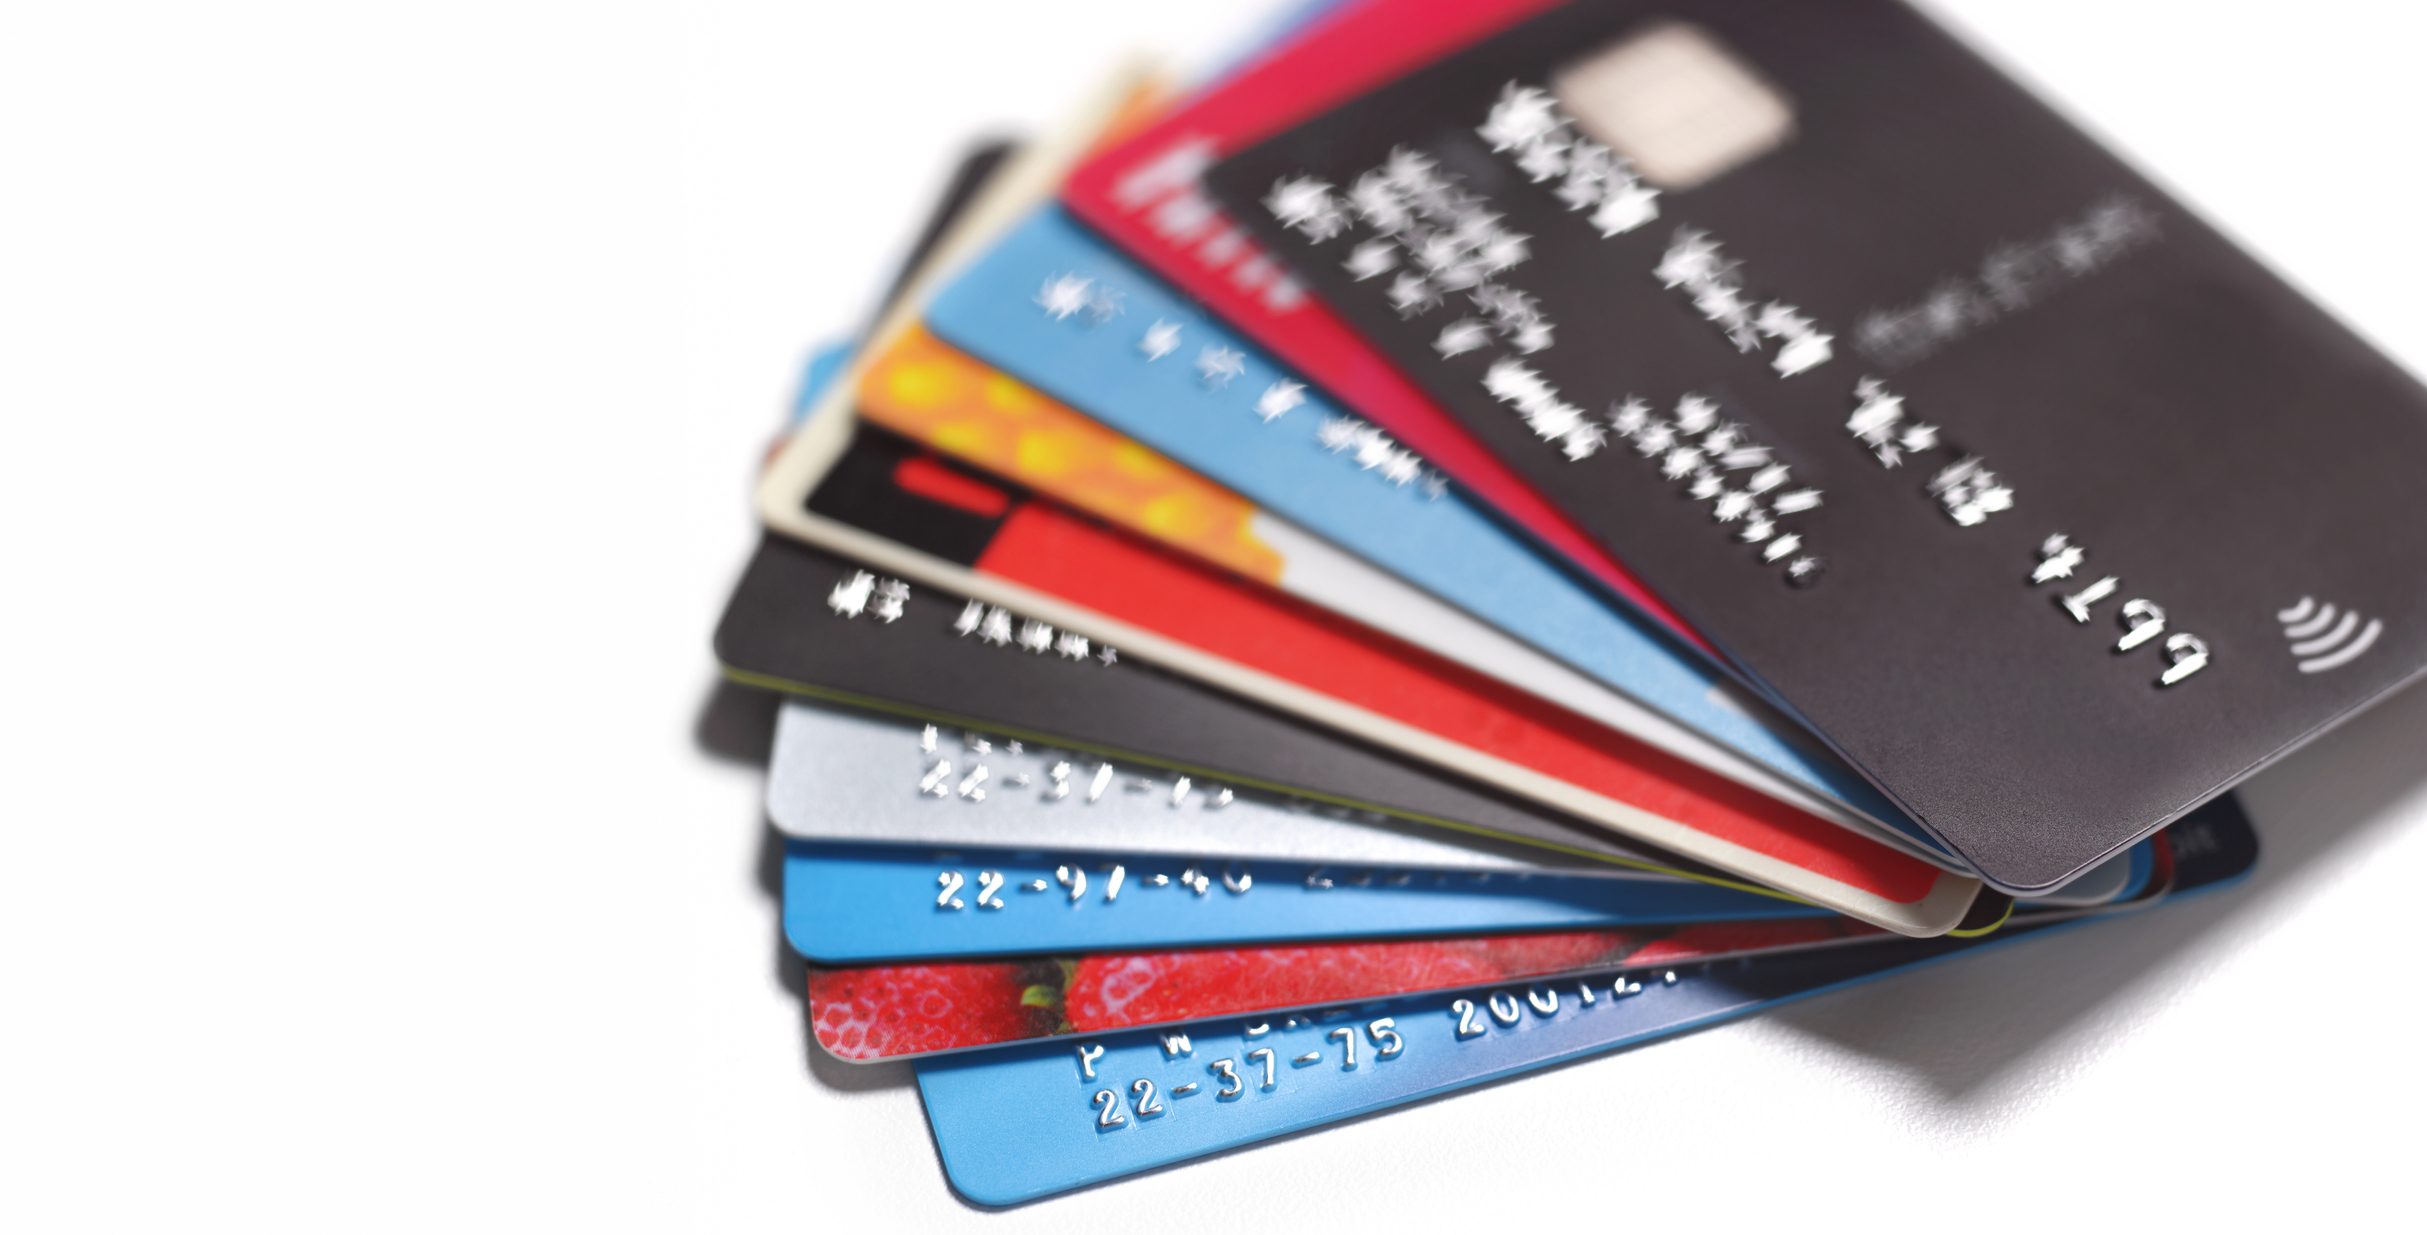 Tasas de interés de tarjetas de crédito bajas y que no son tan conocidas en Colombia